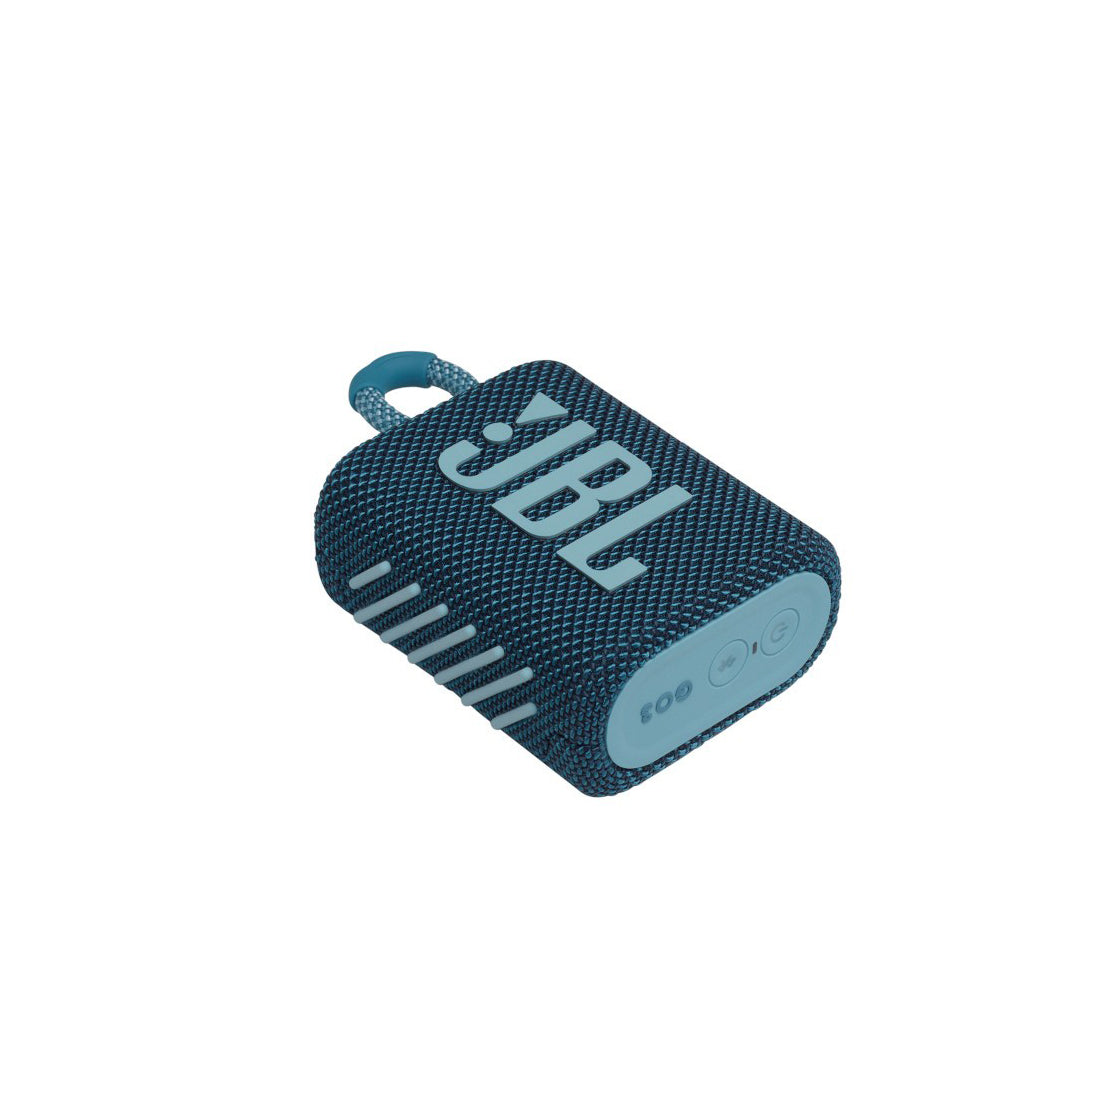 JBL GO 3 Speaker Bluetooth Portatile, Cassa Altoparlante Wireless con Design Compatto, Resistente ad Acqua e Polvere IPX67, fino a 5 h di Autonomia, USB, blu